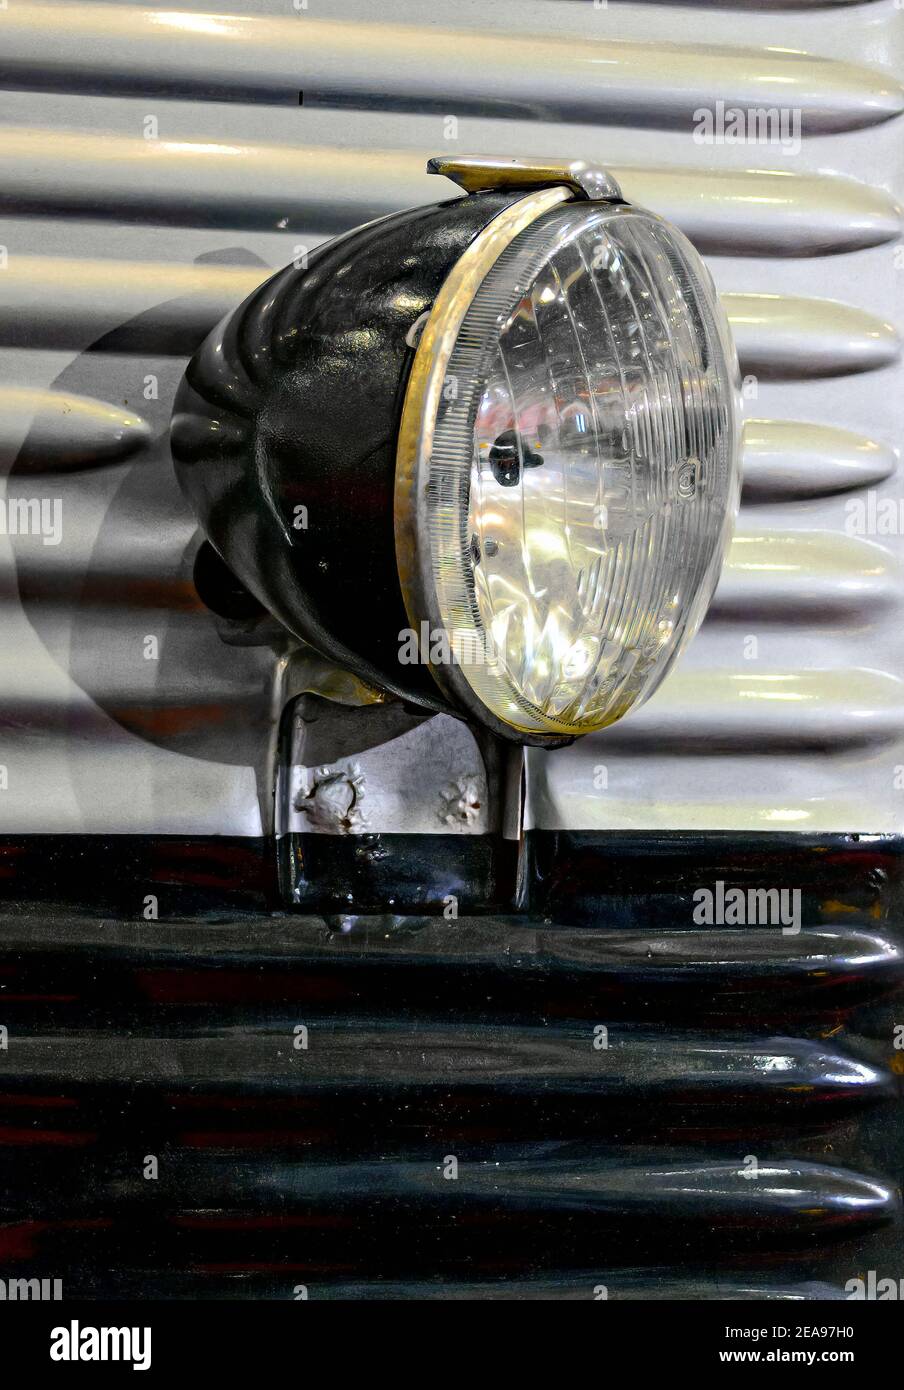 ancien phare noir sur une voiture peinte en noir et argent corps en tôle de fonte ondulée Banque D'Images